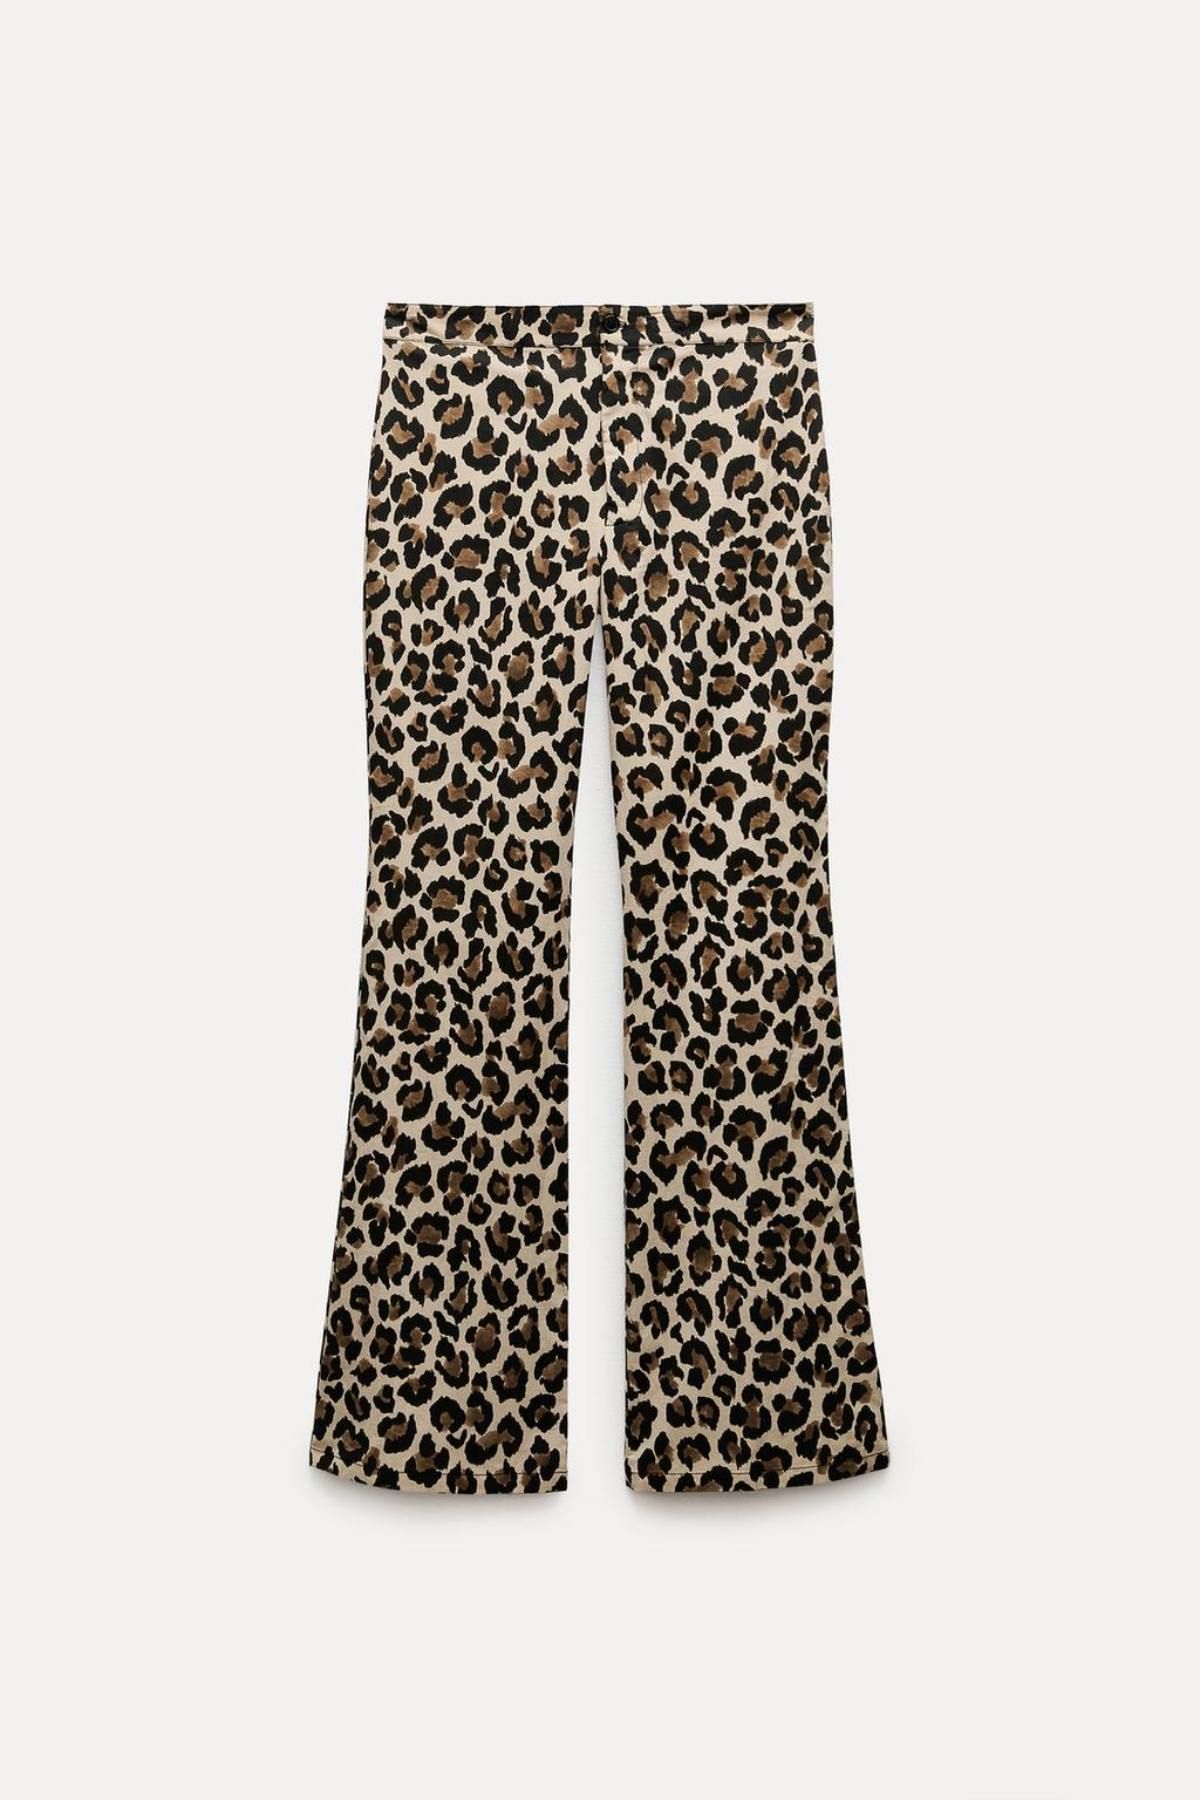 Pantalón animal print de Zara